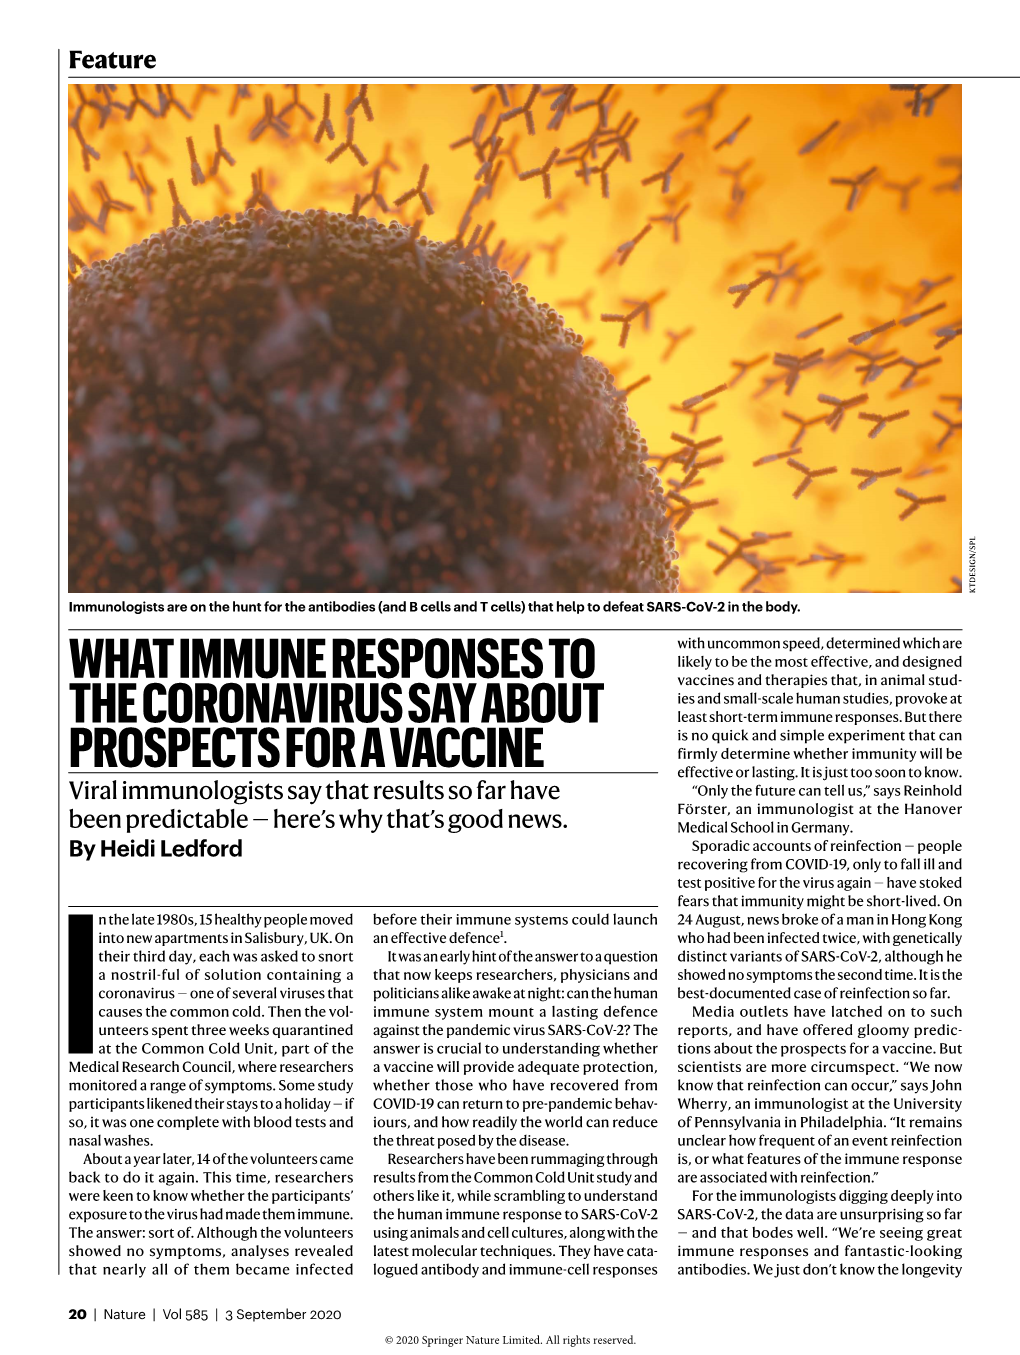 What Immune Responses to the Coronavirus Say